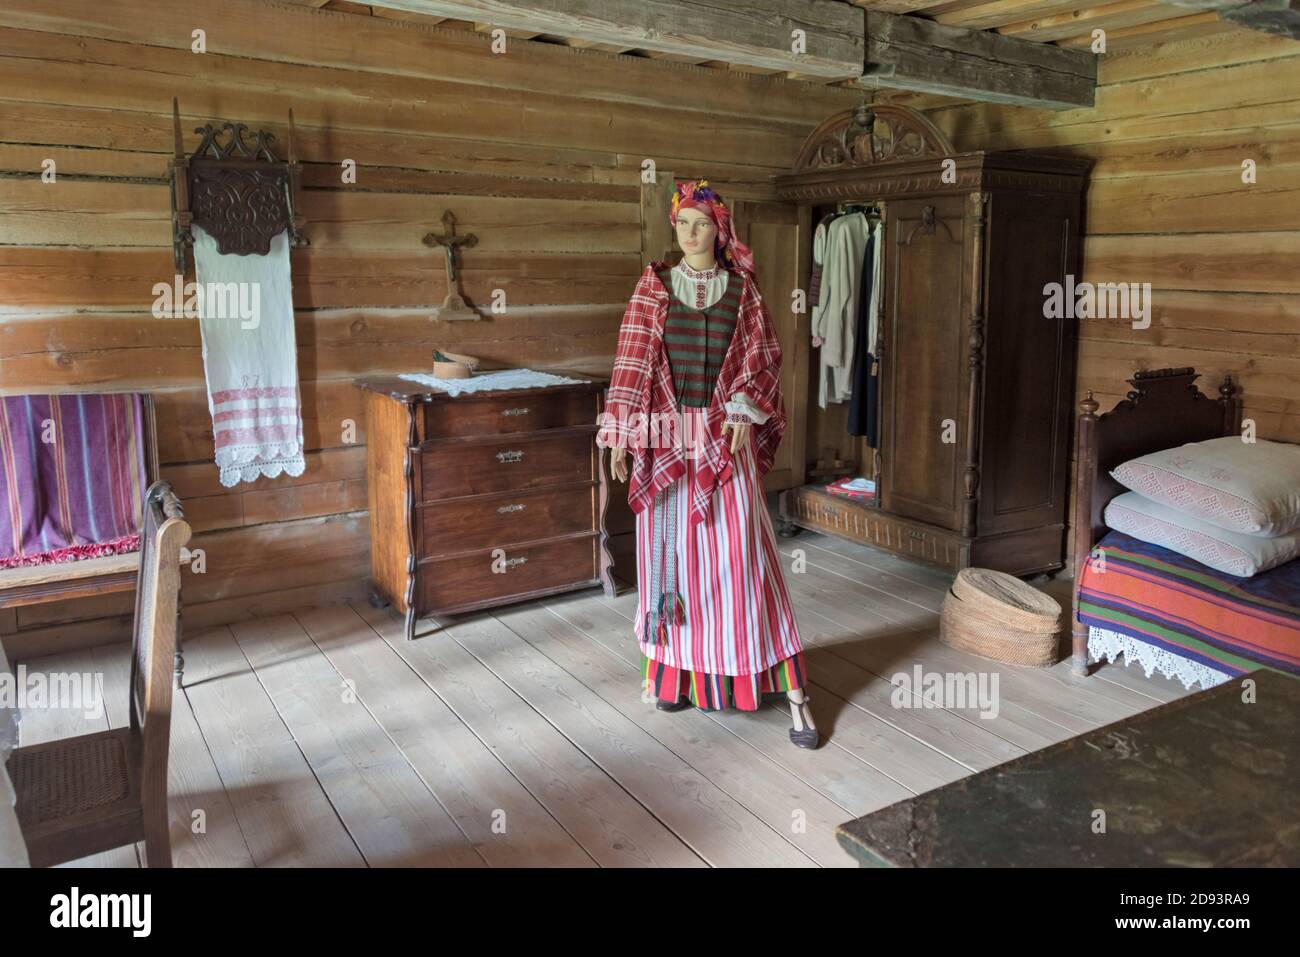 Modèle de femme et mobilier à l'intérieur d'une maison au musée ethnographique en plein air de Rumsiskes, Lituanie Banque D'Images